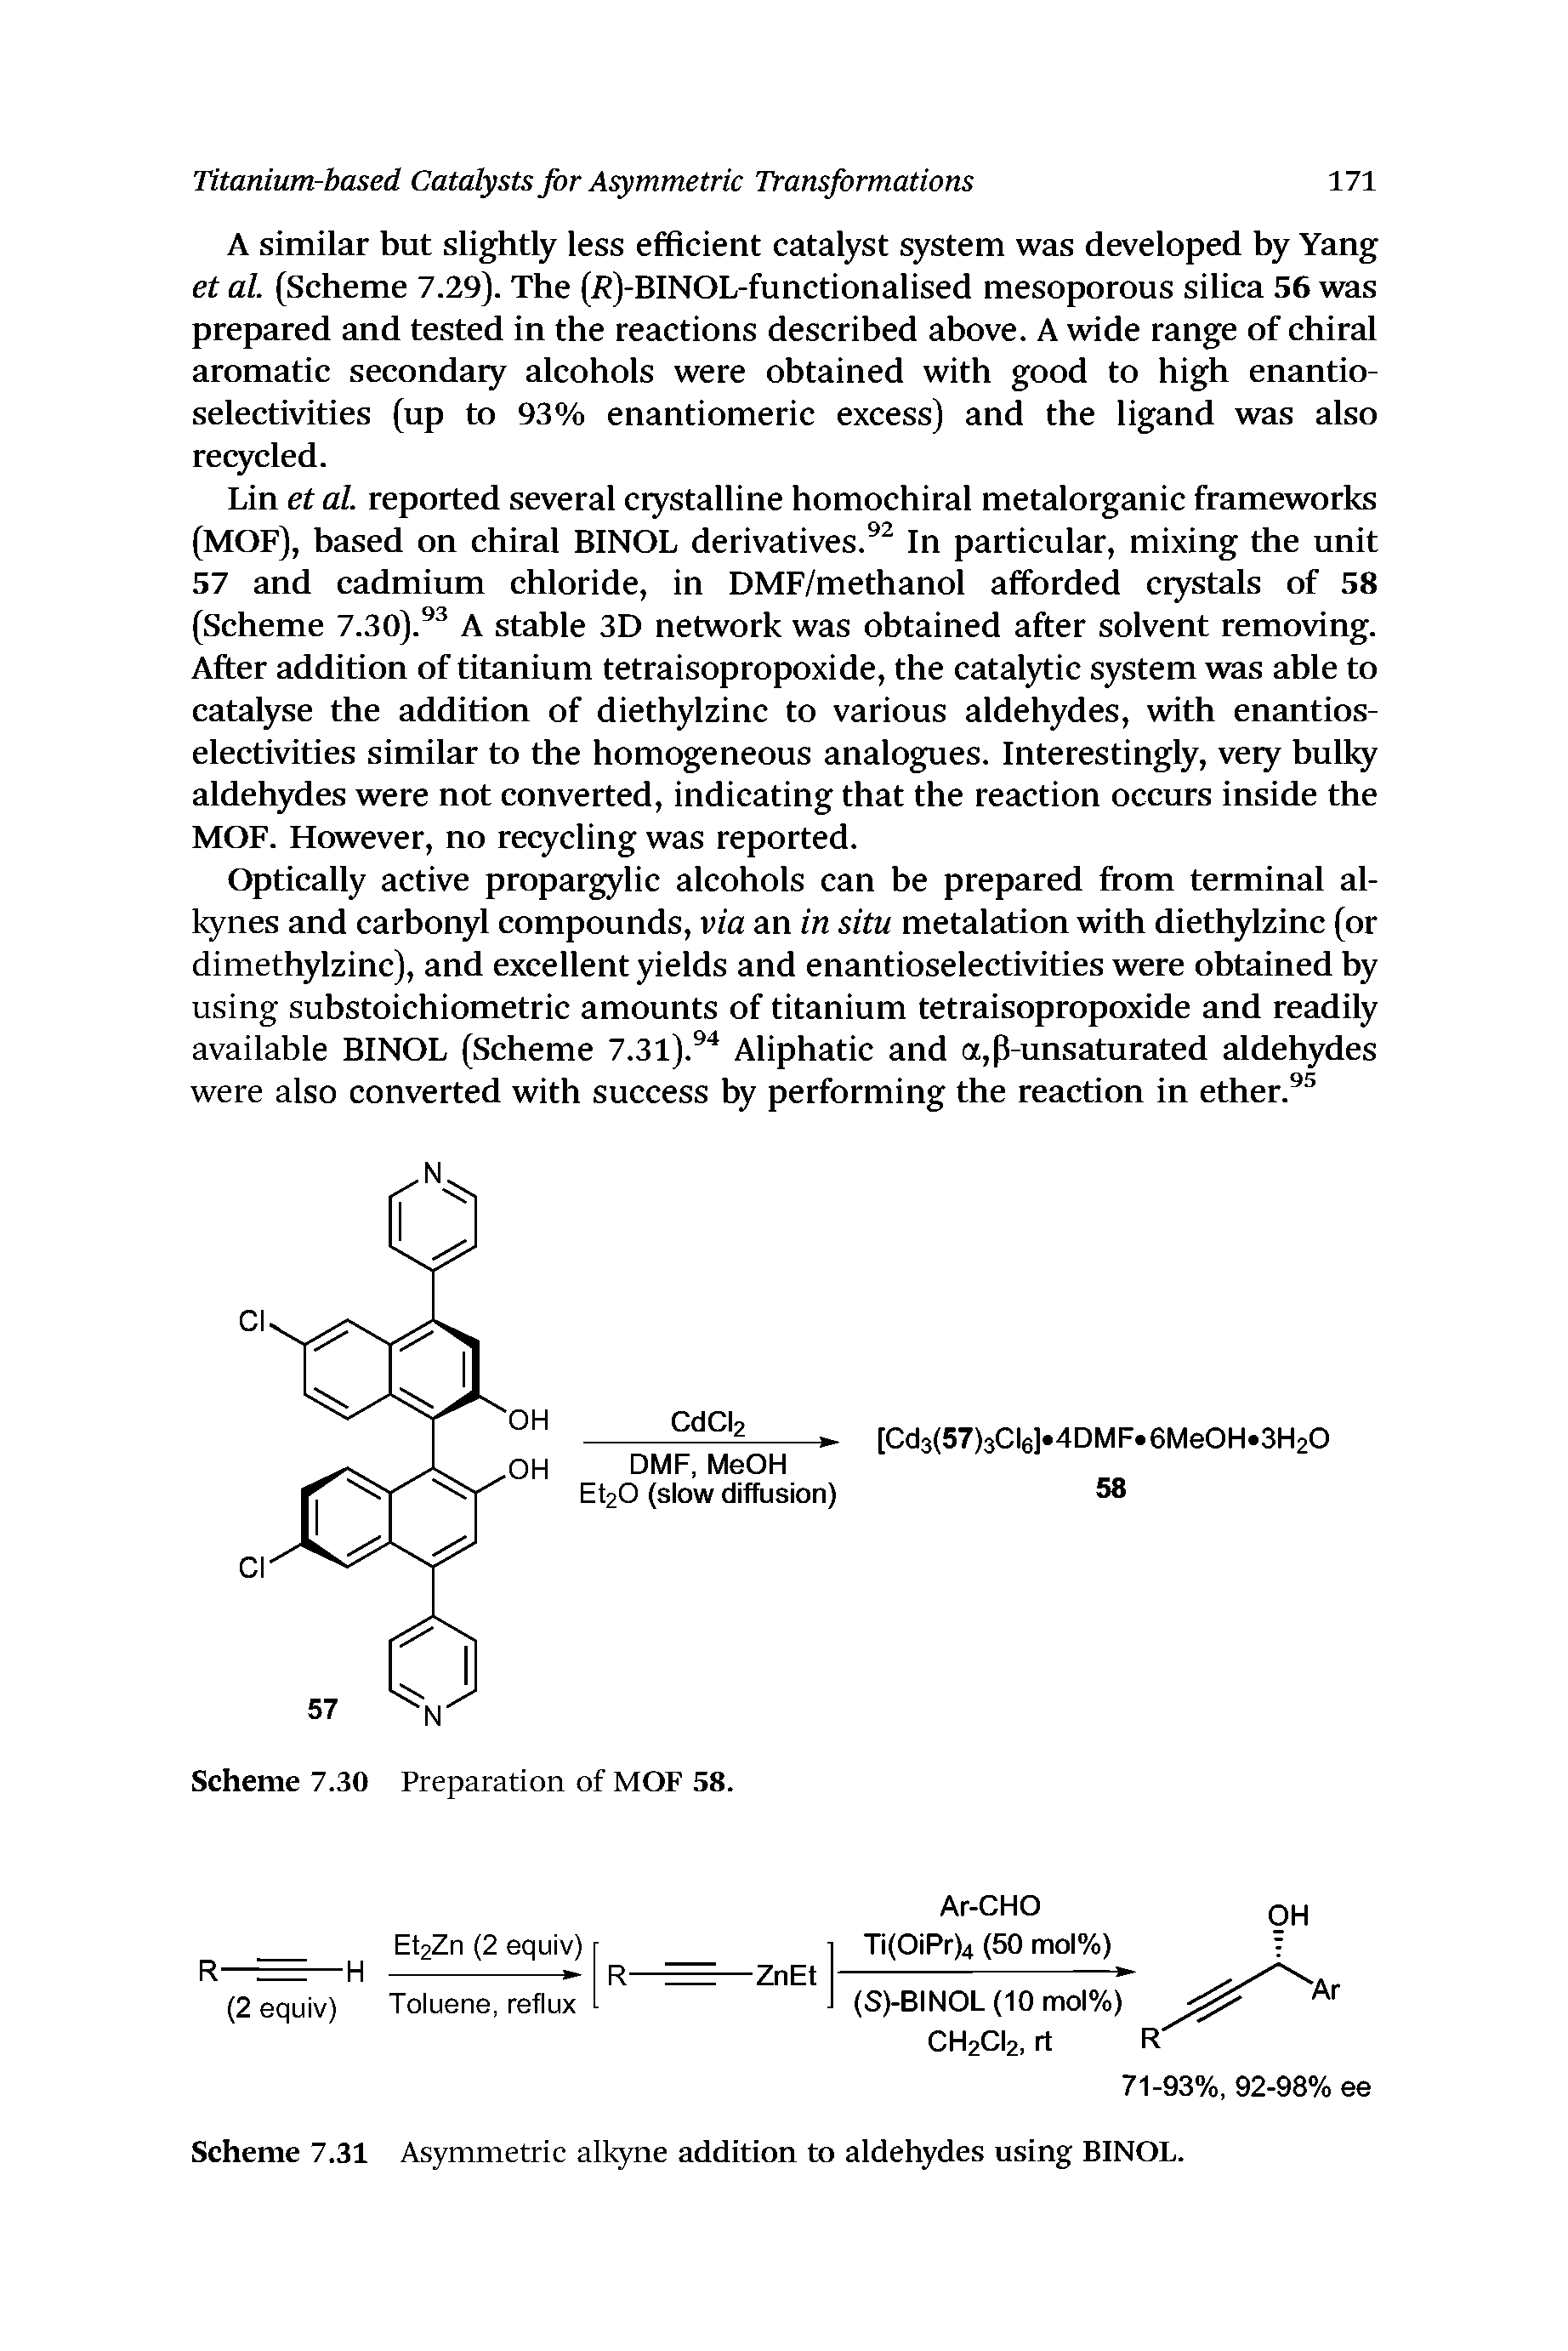 Scheme 7.31 Asymmetric alkyne addition to aldehydes using BINOL.